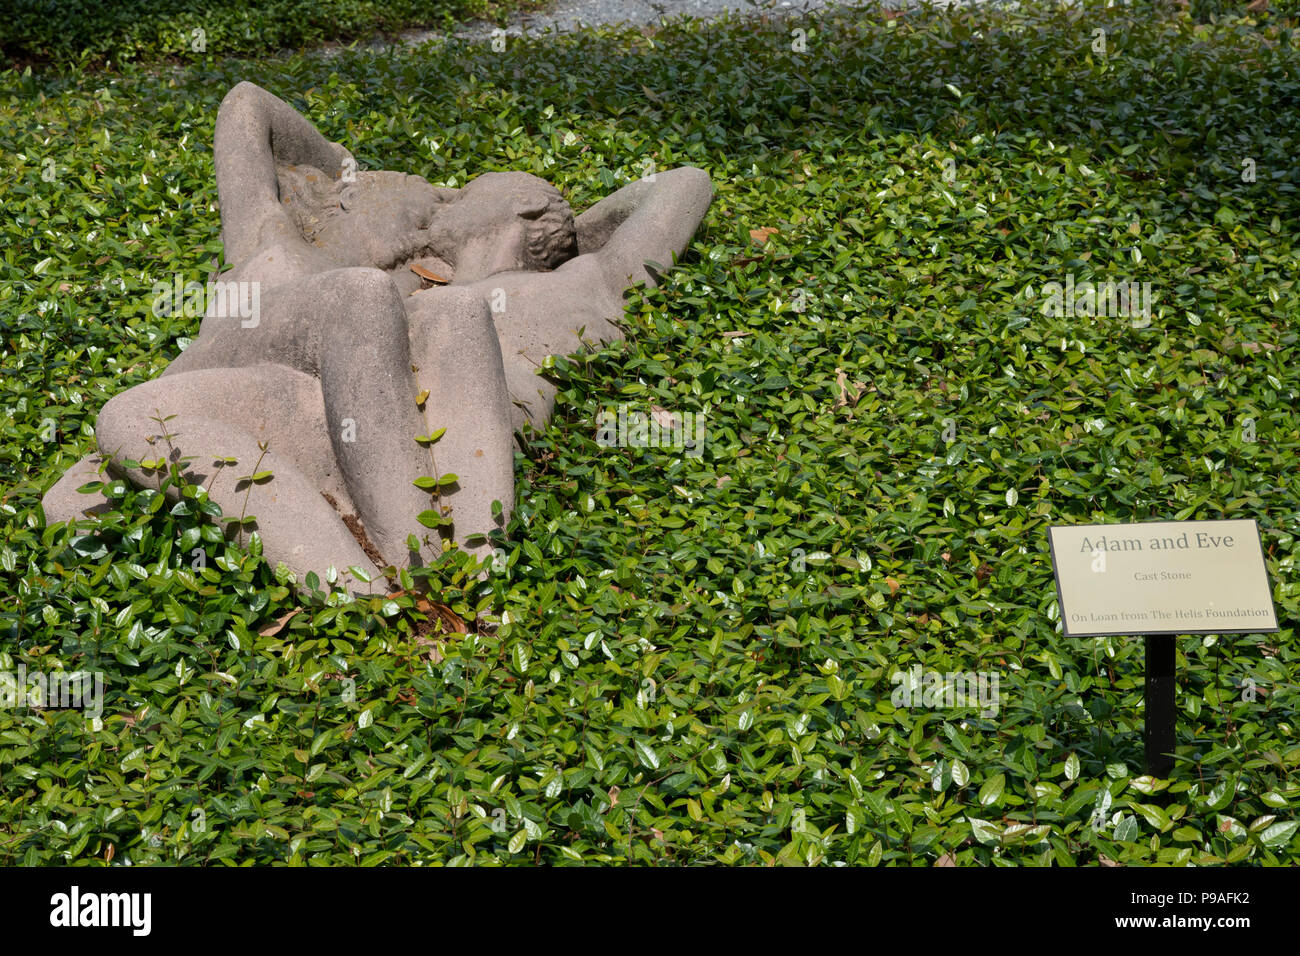 La Nouvelle-Orléans, Louisiane - un cast stone sculpture intitulée 'Adam et Eve', par Enrique AlfÃ©rez, dans le Enrique AlfÃ©rez Jardin de sculptures dans la nouvelle Orlean Banque D'Images